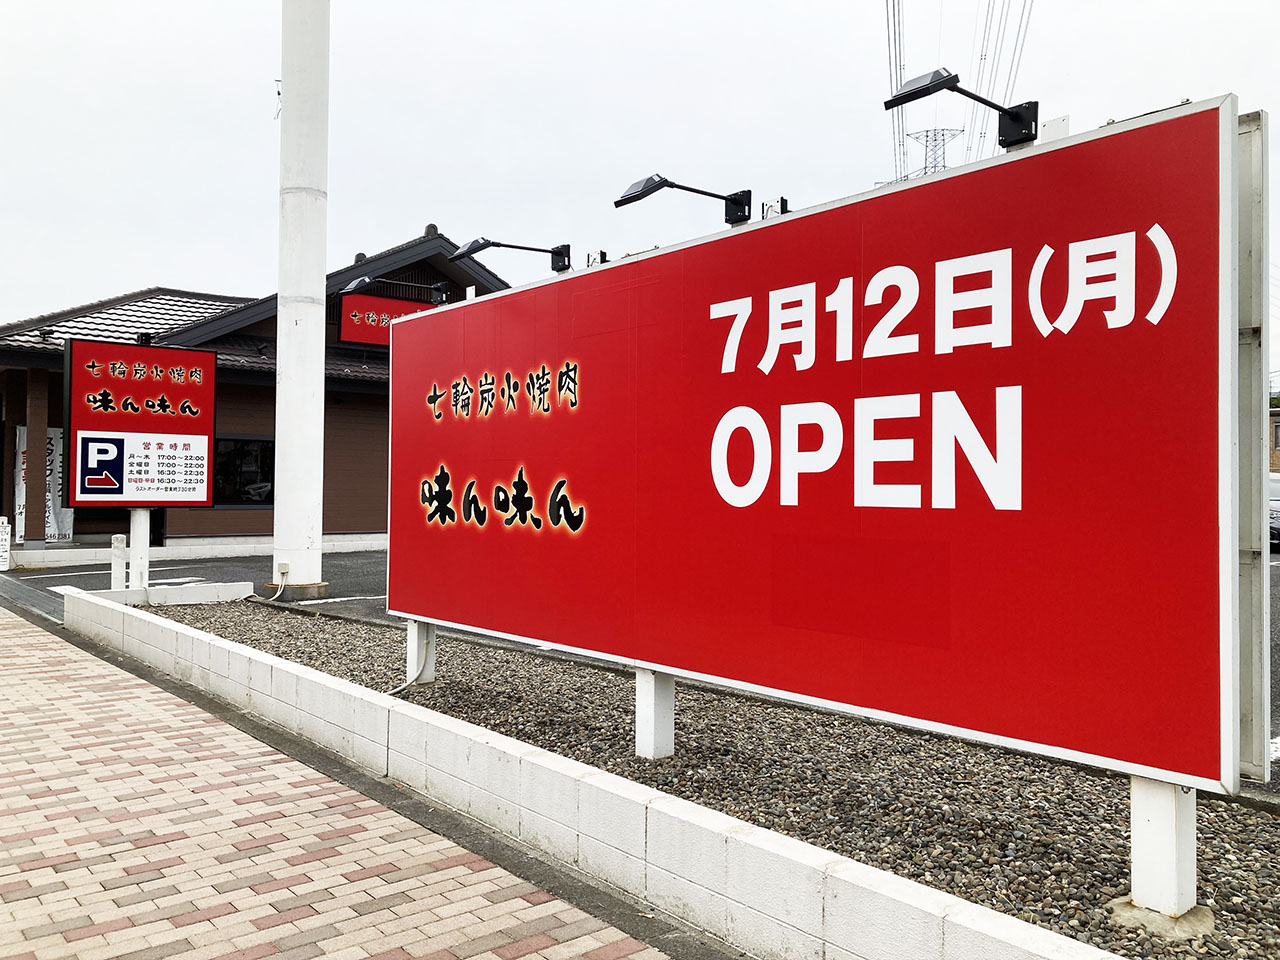 『七輪炭火焼肉 味ん味ん稲城長沼店』のオープン日は2021年7月12日(水)